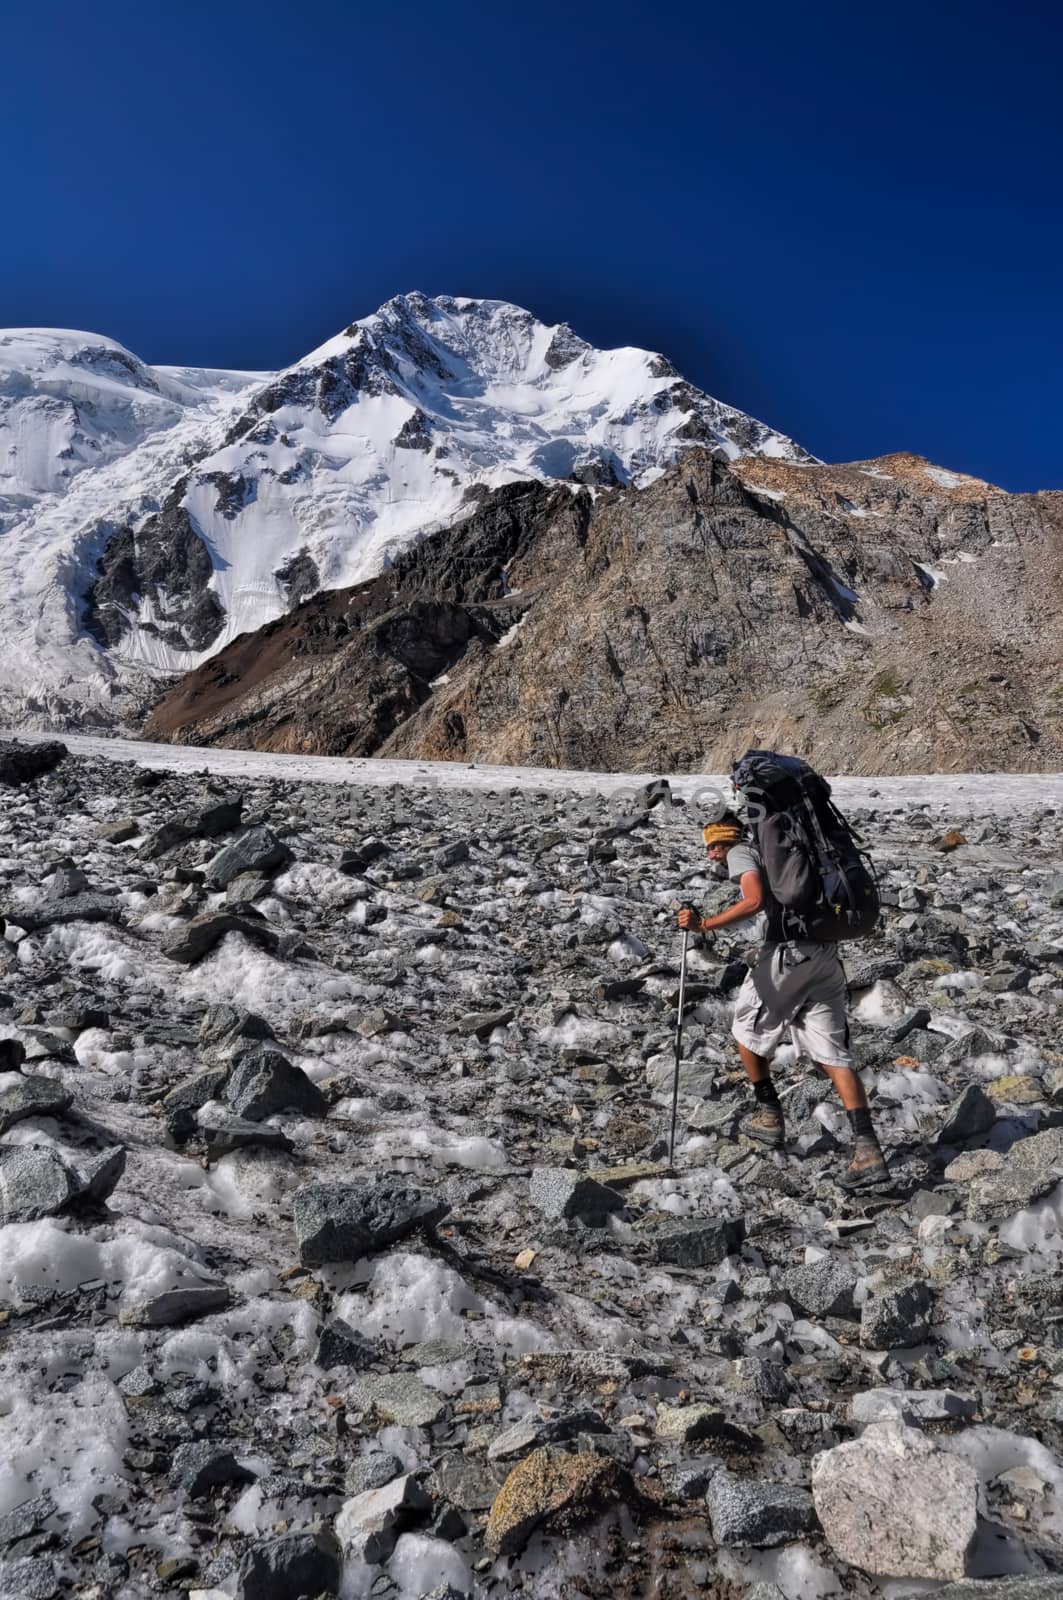 Hiker with backpack on glacier below highest peaks in Tien-Shan mountain range in Kyrgyzstan